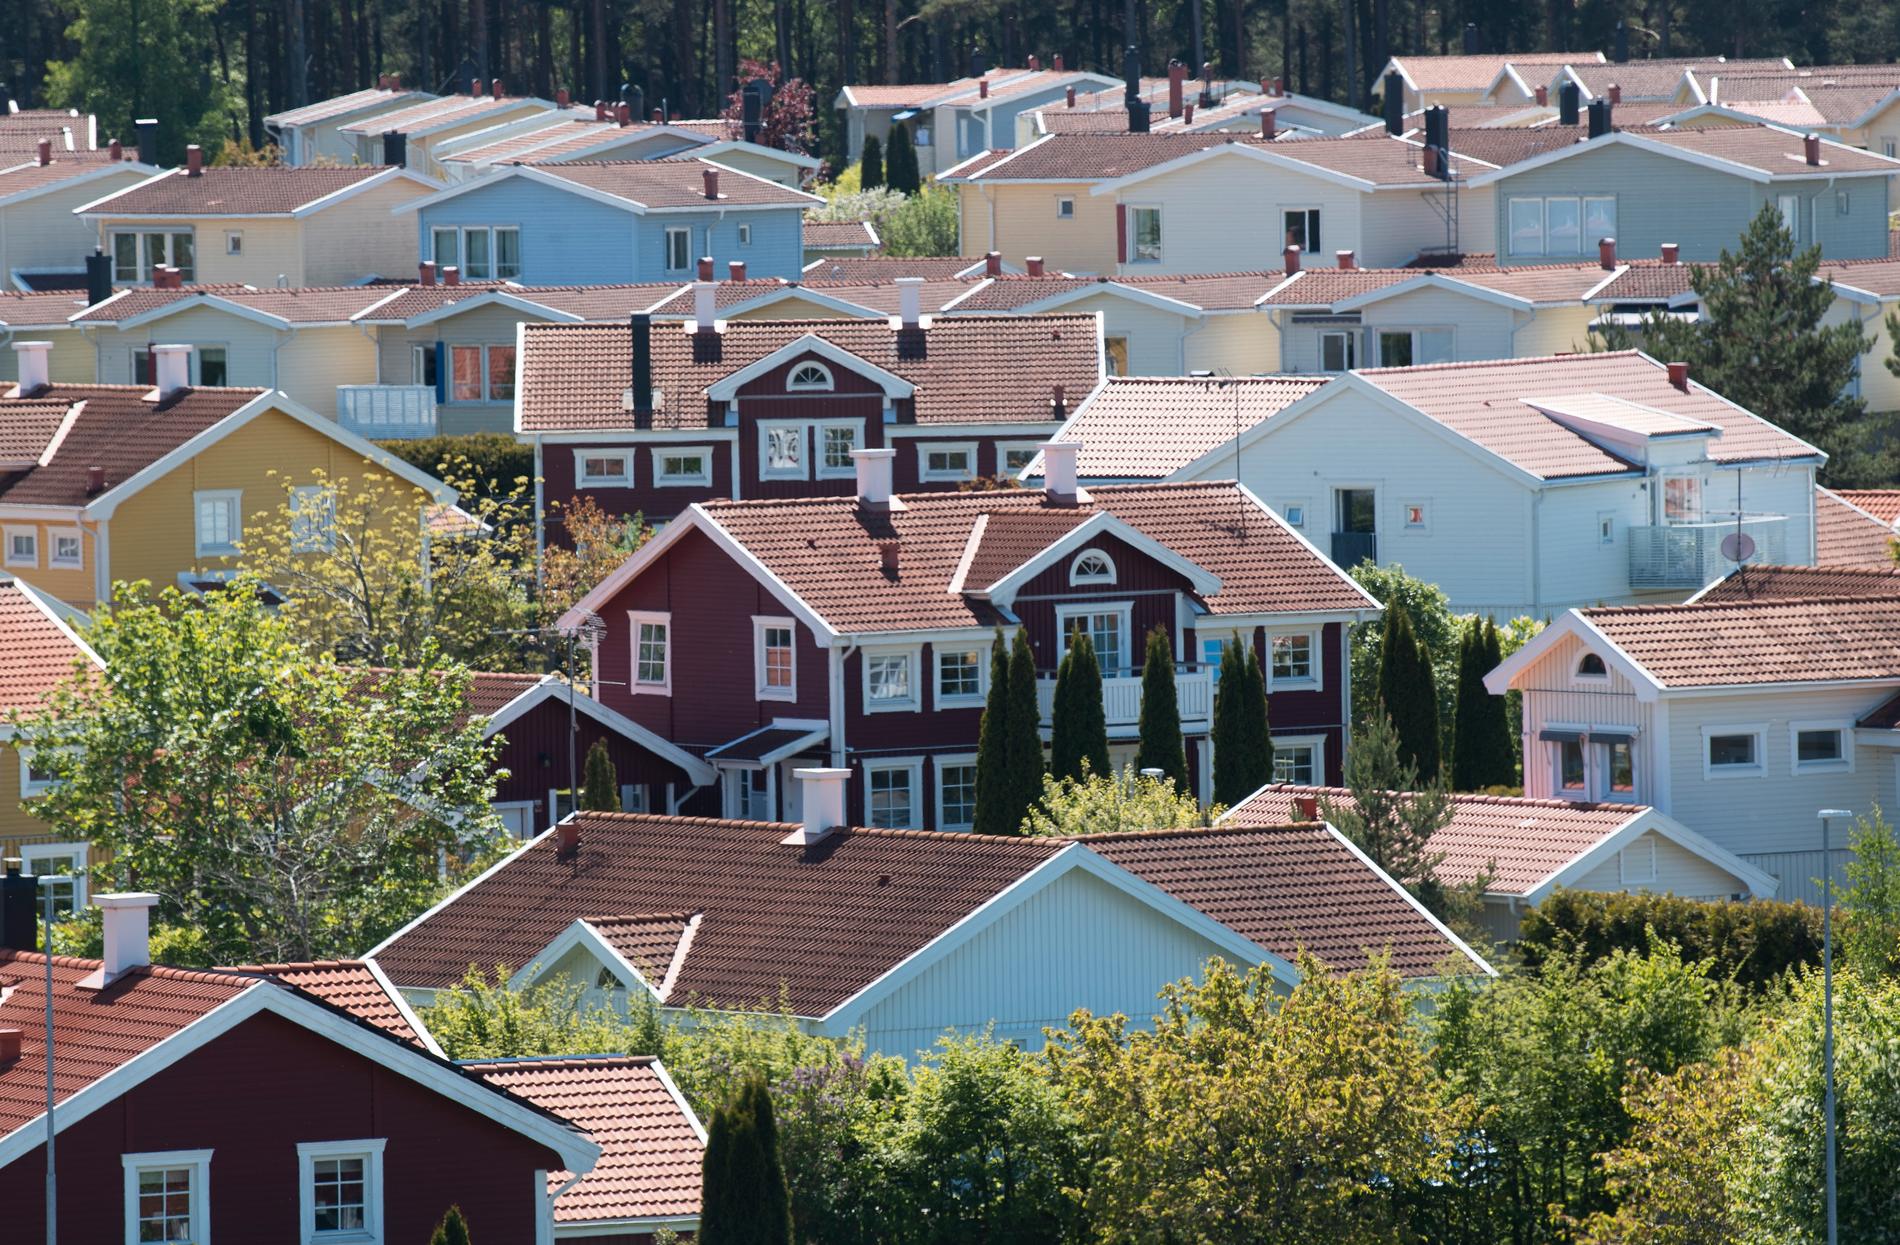 Galopperande bostadspriser är ett effektivt sätt att stänga ute egendomslösa, skriver Andreas Cervenka. 